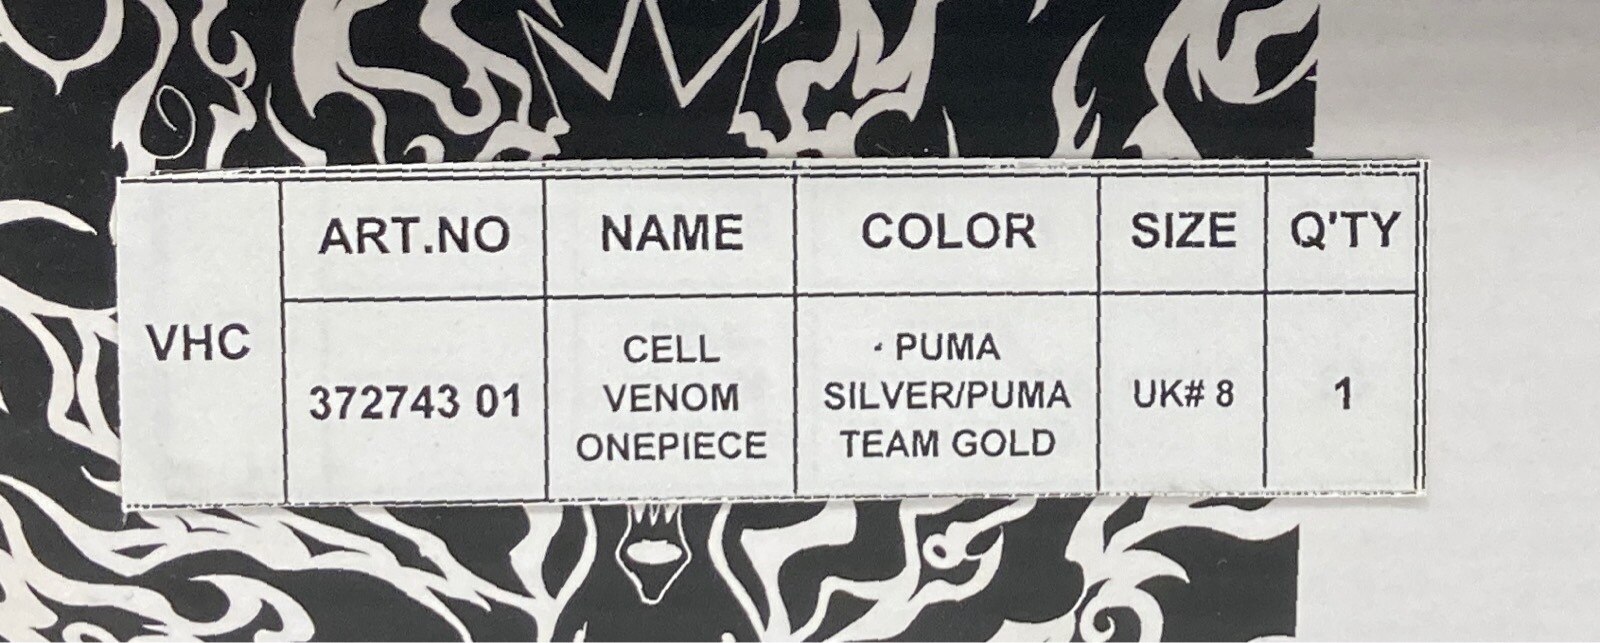 Puma Cell Venom One Piece Men's - 372743-01 - US